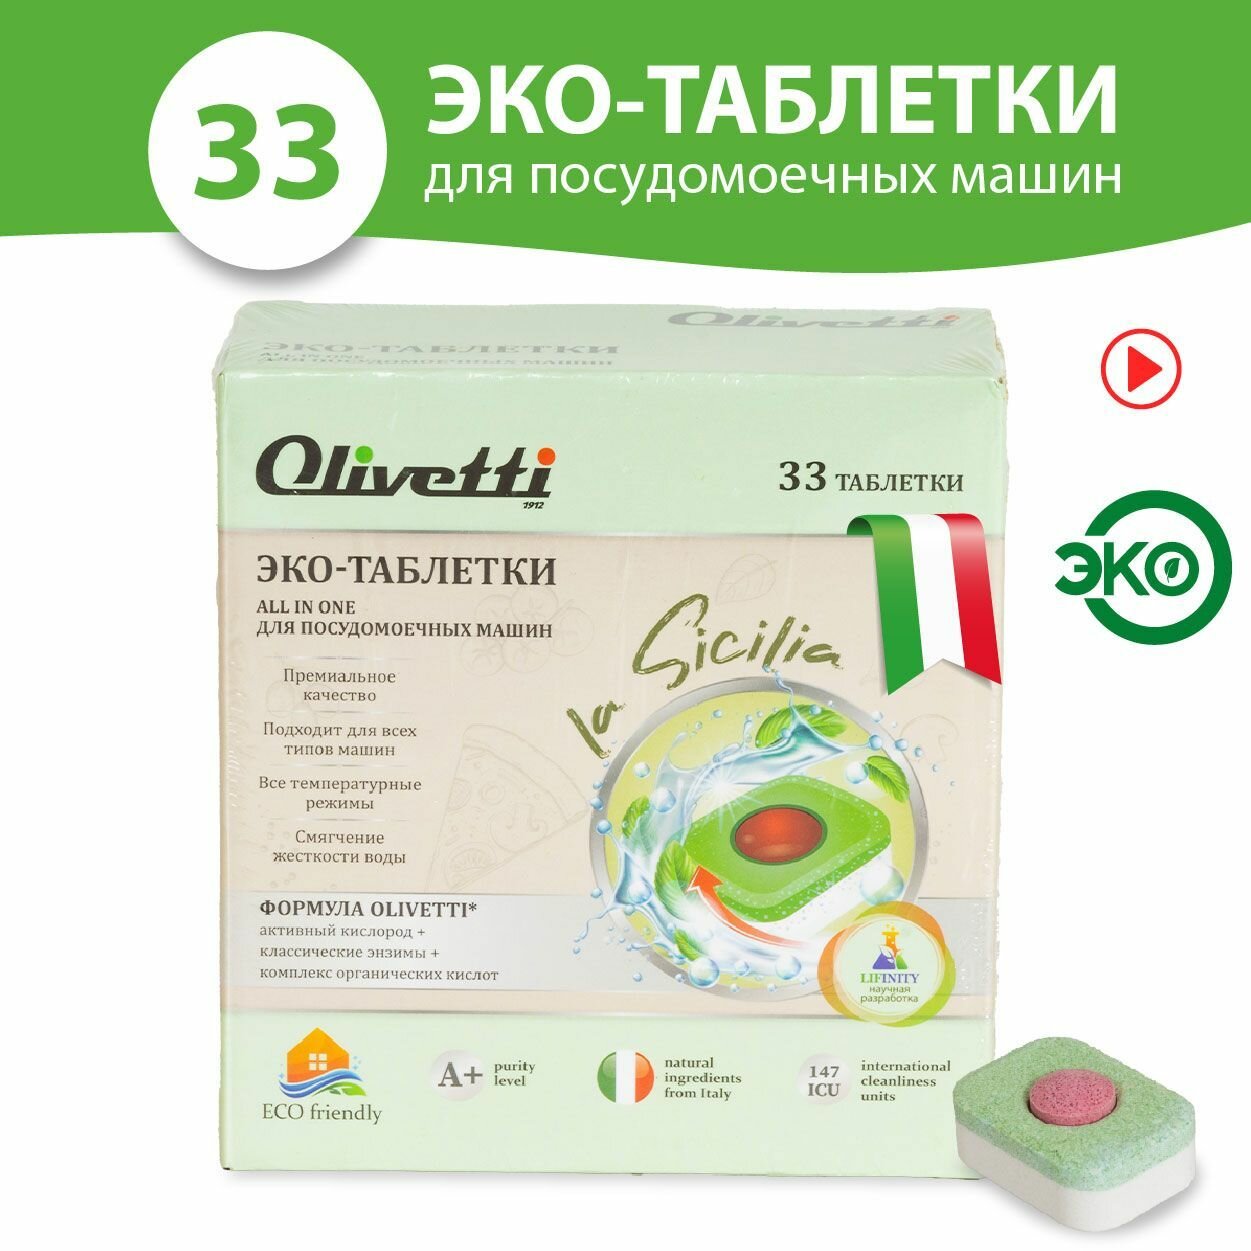 Olivetti Эко-таблетки 3в1 бесфосфатные для посудомоечных машин 33 штуки /премиум качество/ без пятен и разводов, натуральные компоненты из Италии